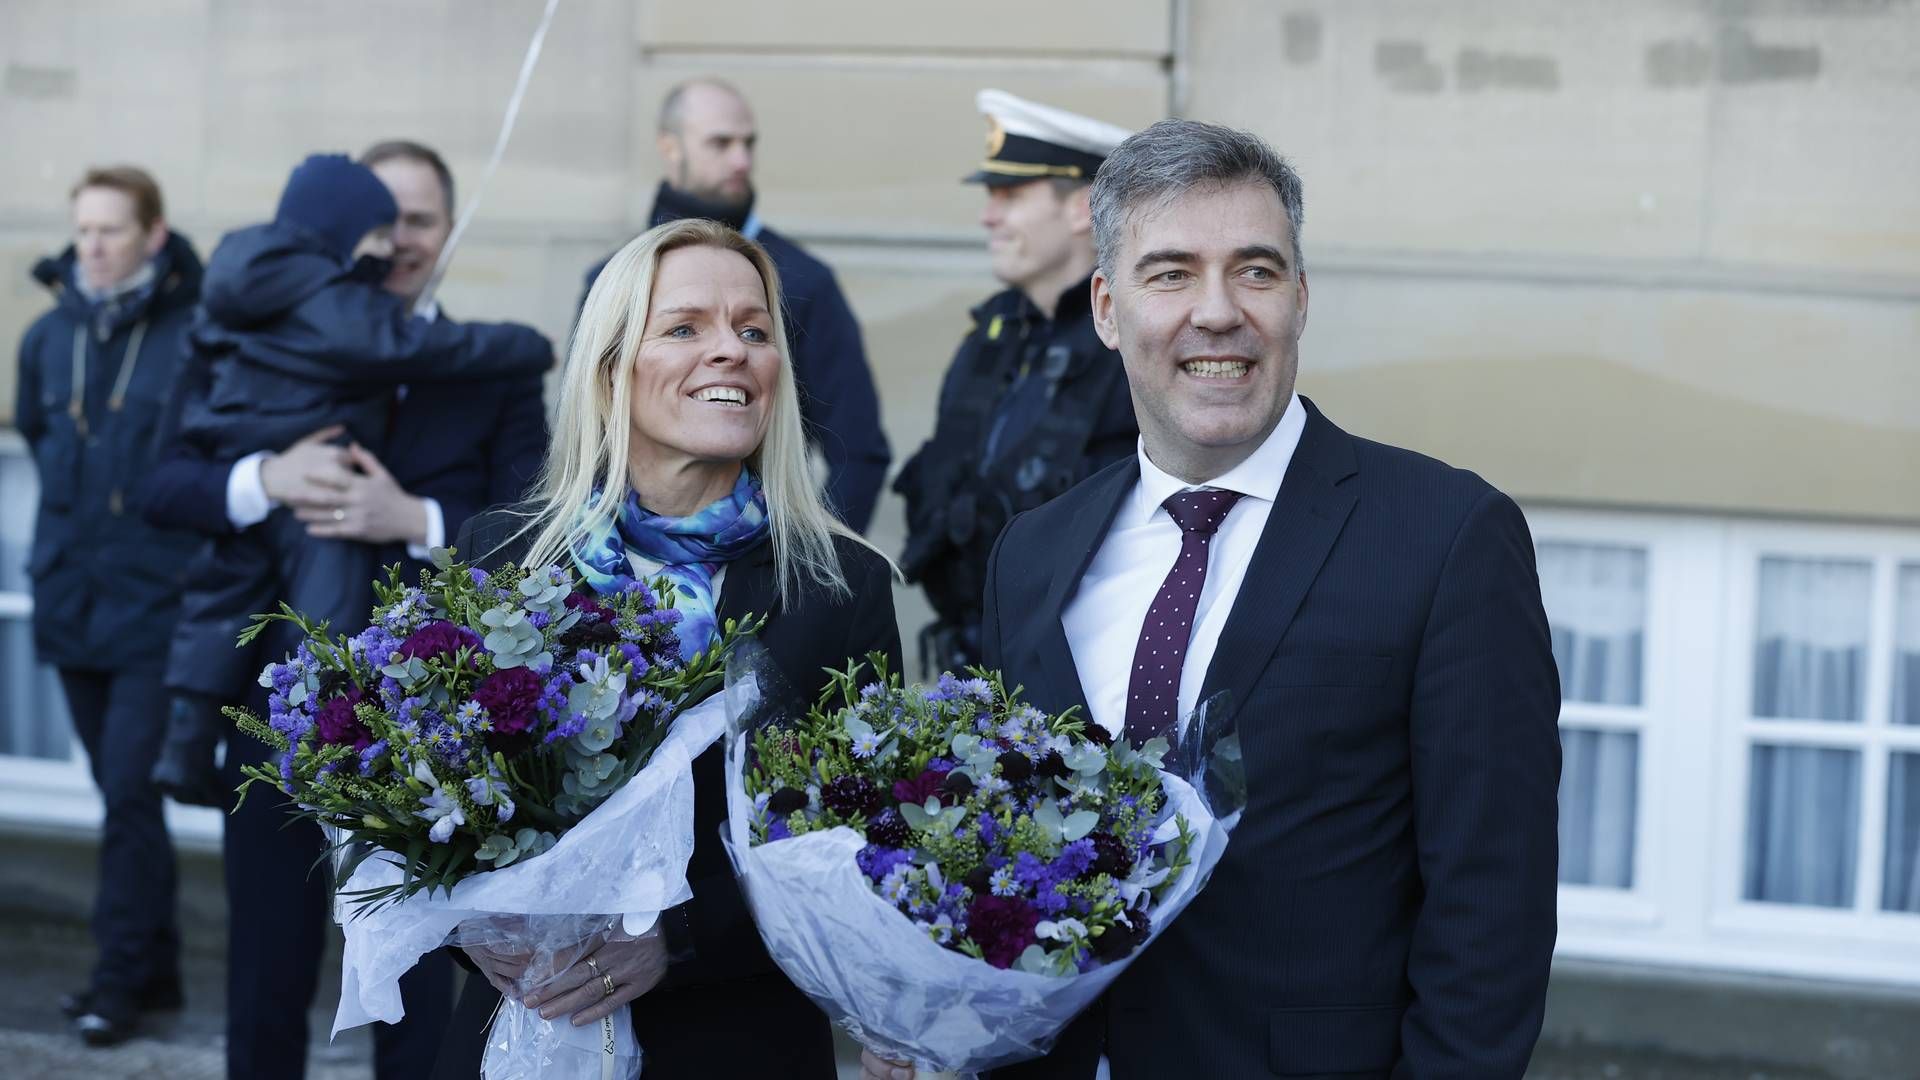 Den nye SVM-regering blev torsdag præsenteret på Amalienborg. Her ældreminister Mette Kierkgaard og Klima-, energi- og forsyningsminister Lars Aagaard. | Foto: Jens Dresling